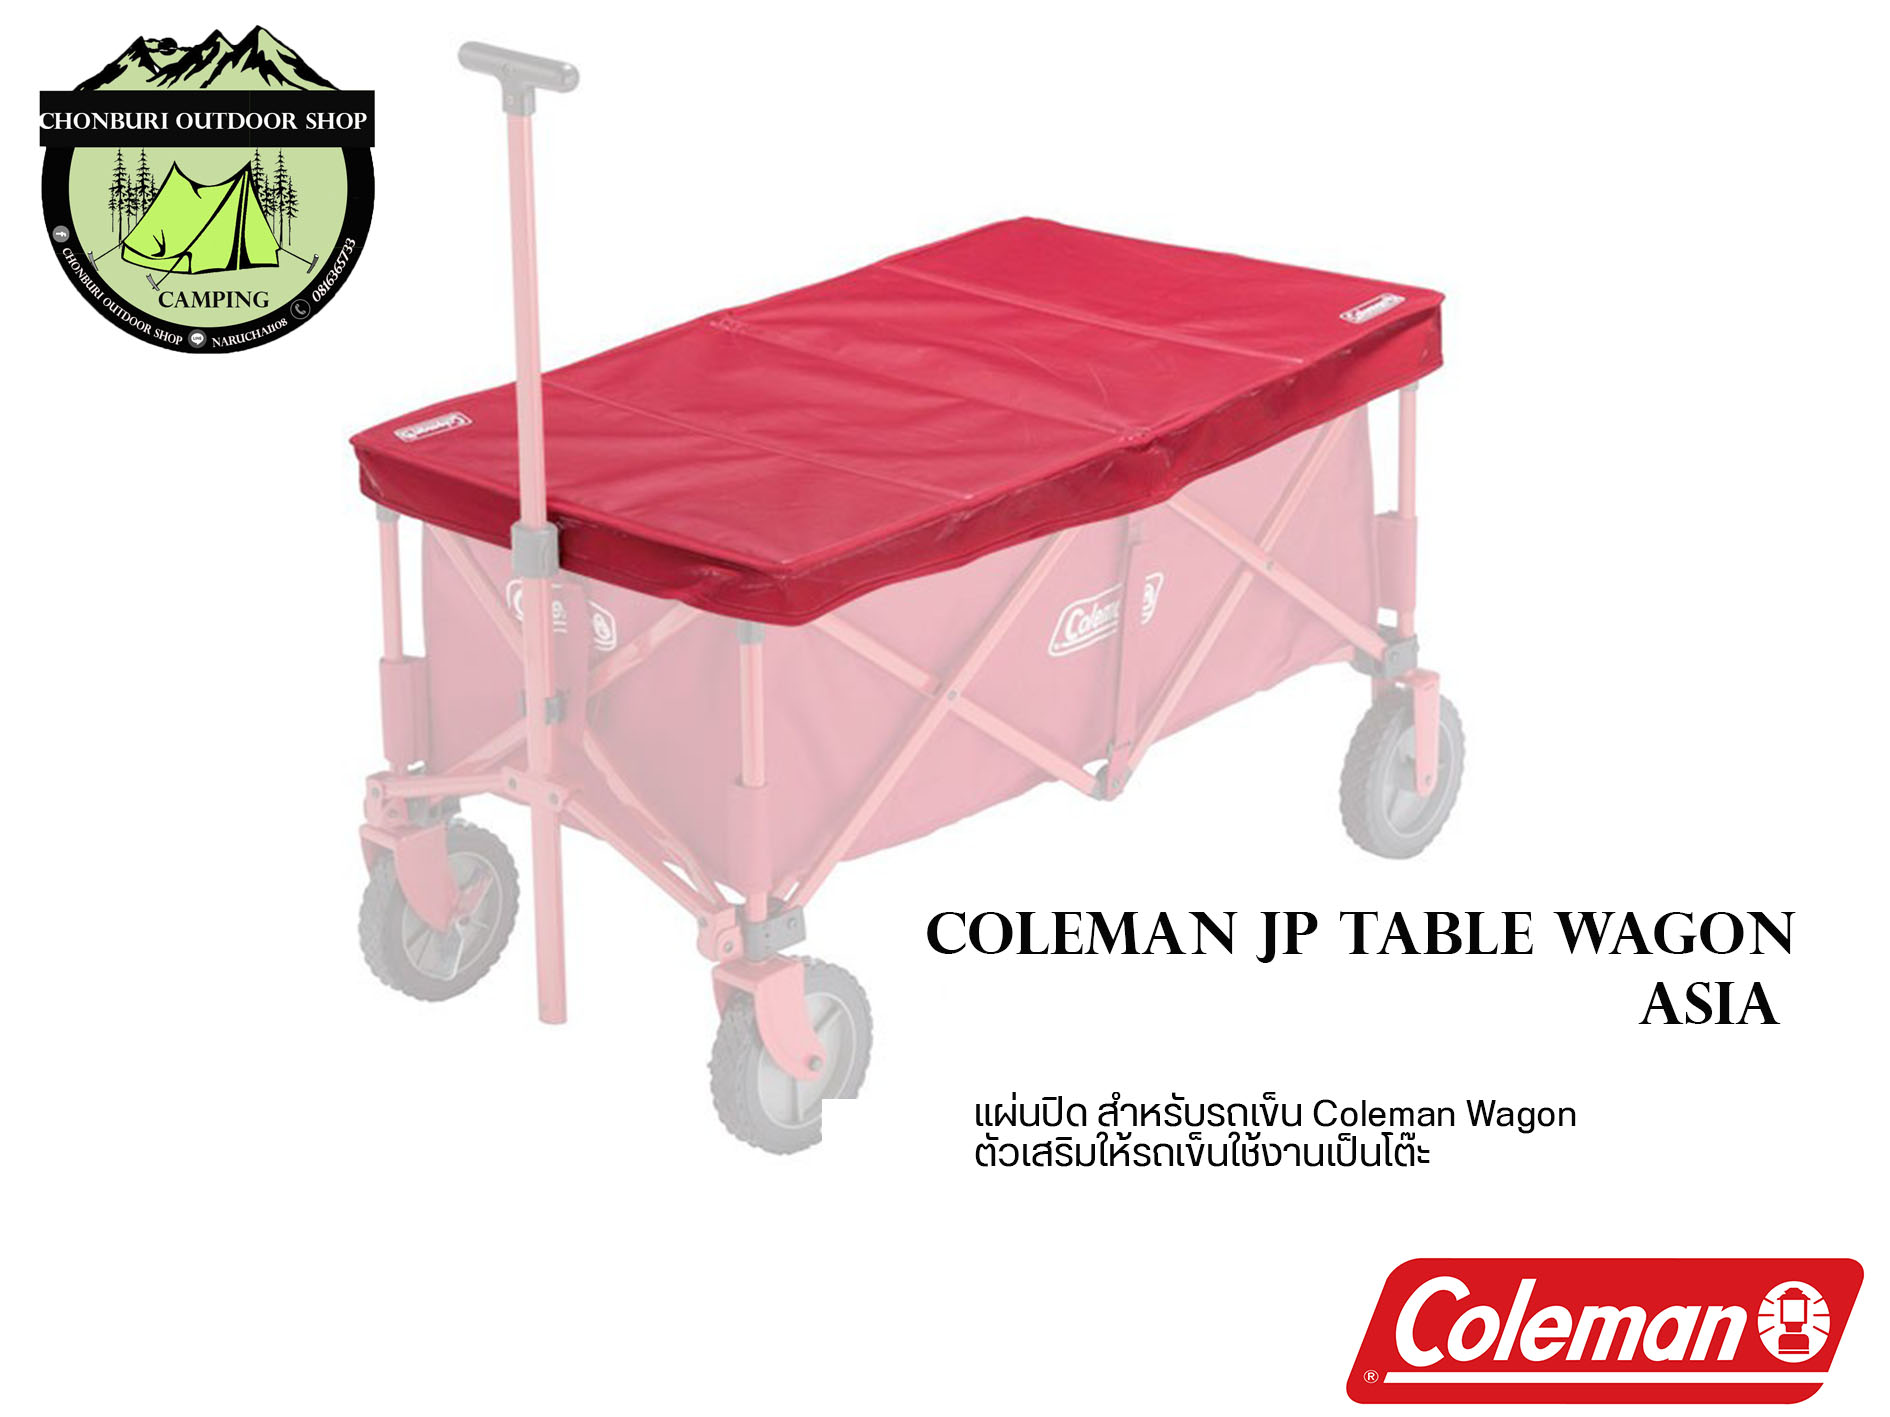 COLEMAN JP TABLE WAGON ASIA ตัวเสริมให้รถเข็นใช้งานเป็นโต๊ะ